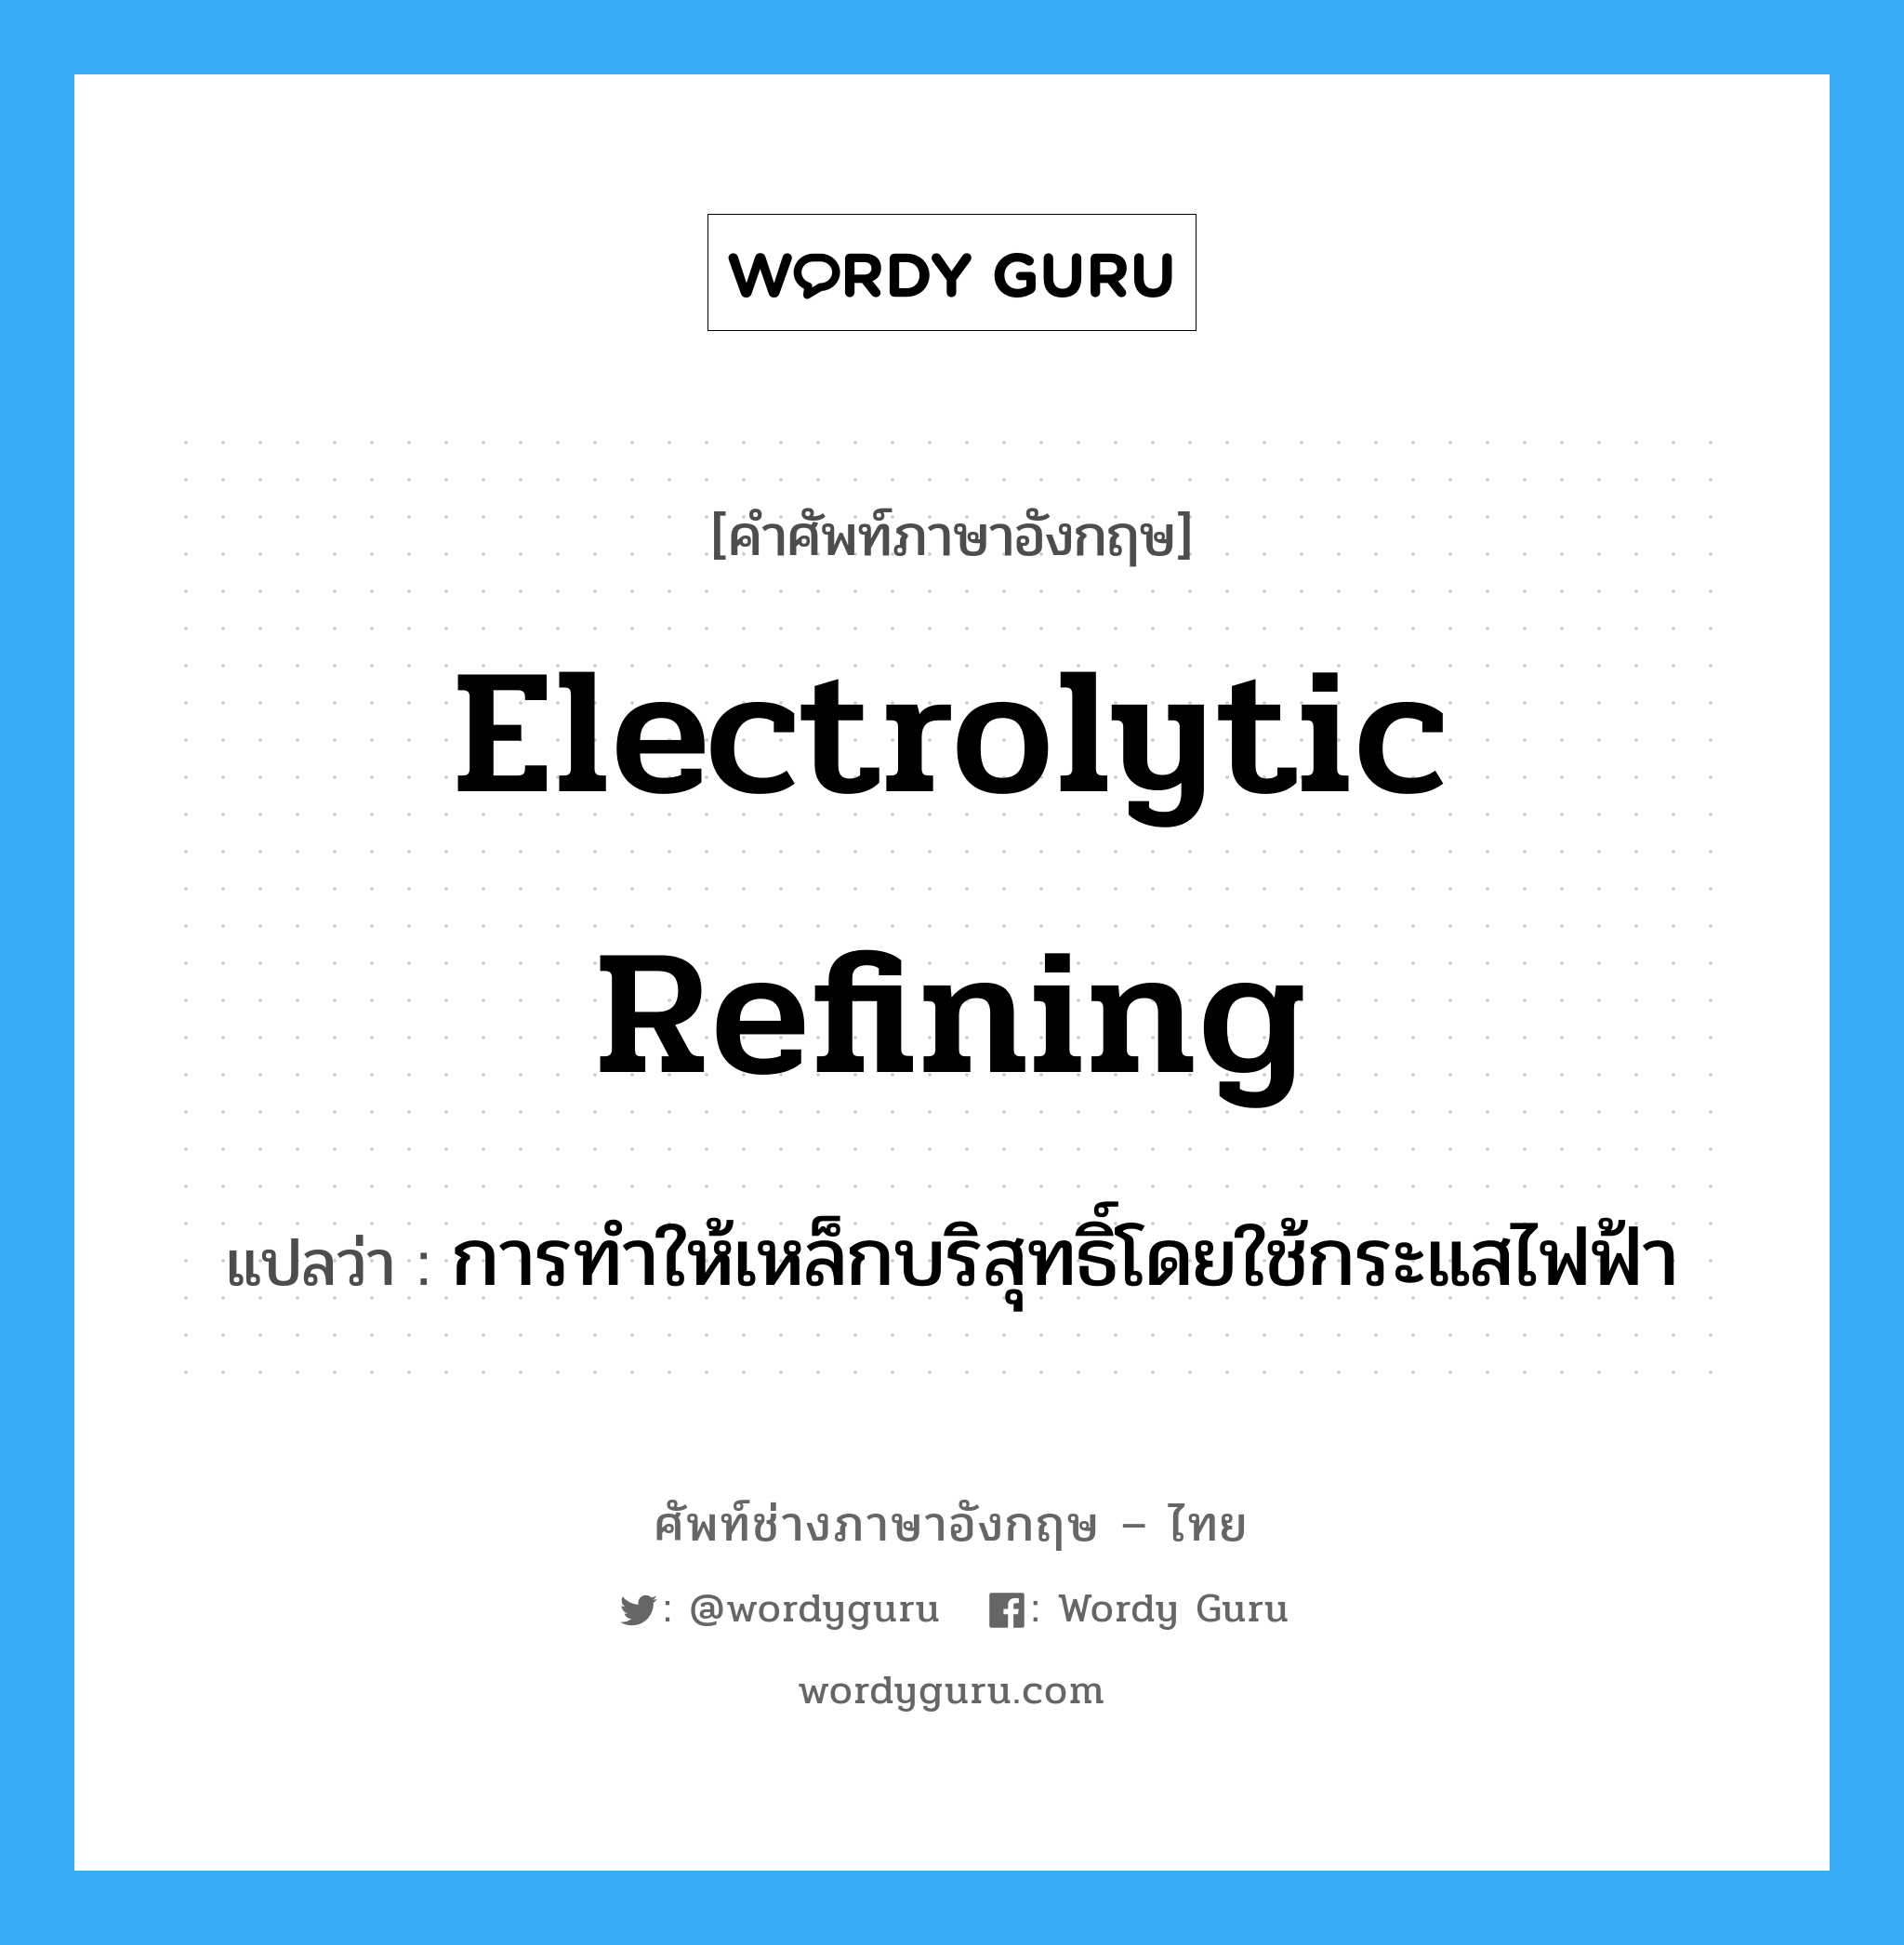 electrolytic refining แปลว่า?, คำศัพท์ช่างภาษาอังกฤษ - ไทย electrolytic refining คำศัพท์ภาษาอังกฤษ electrolytic refining แปลว่า การทำให้เหล็กบริสุทธิ์โดยใช้กระแสไฟฟ้า